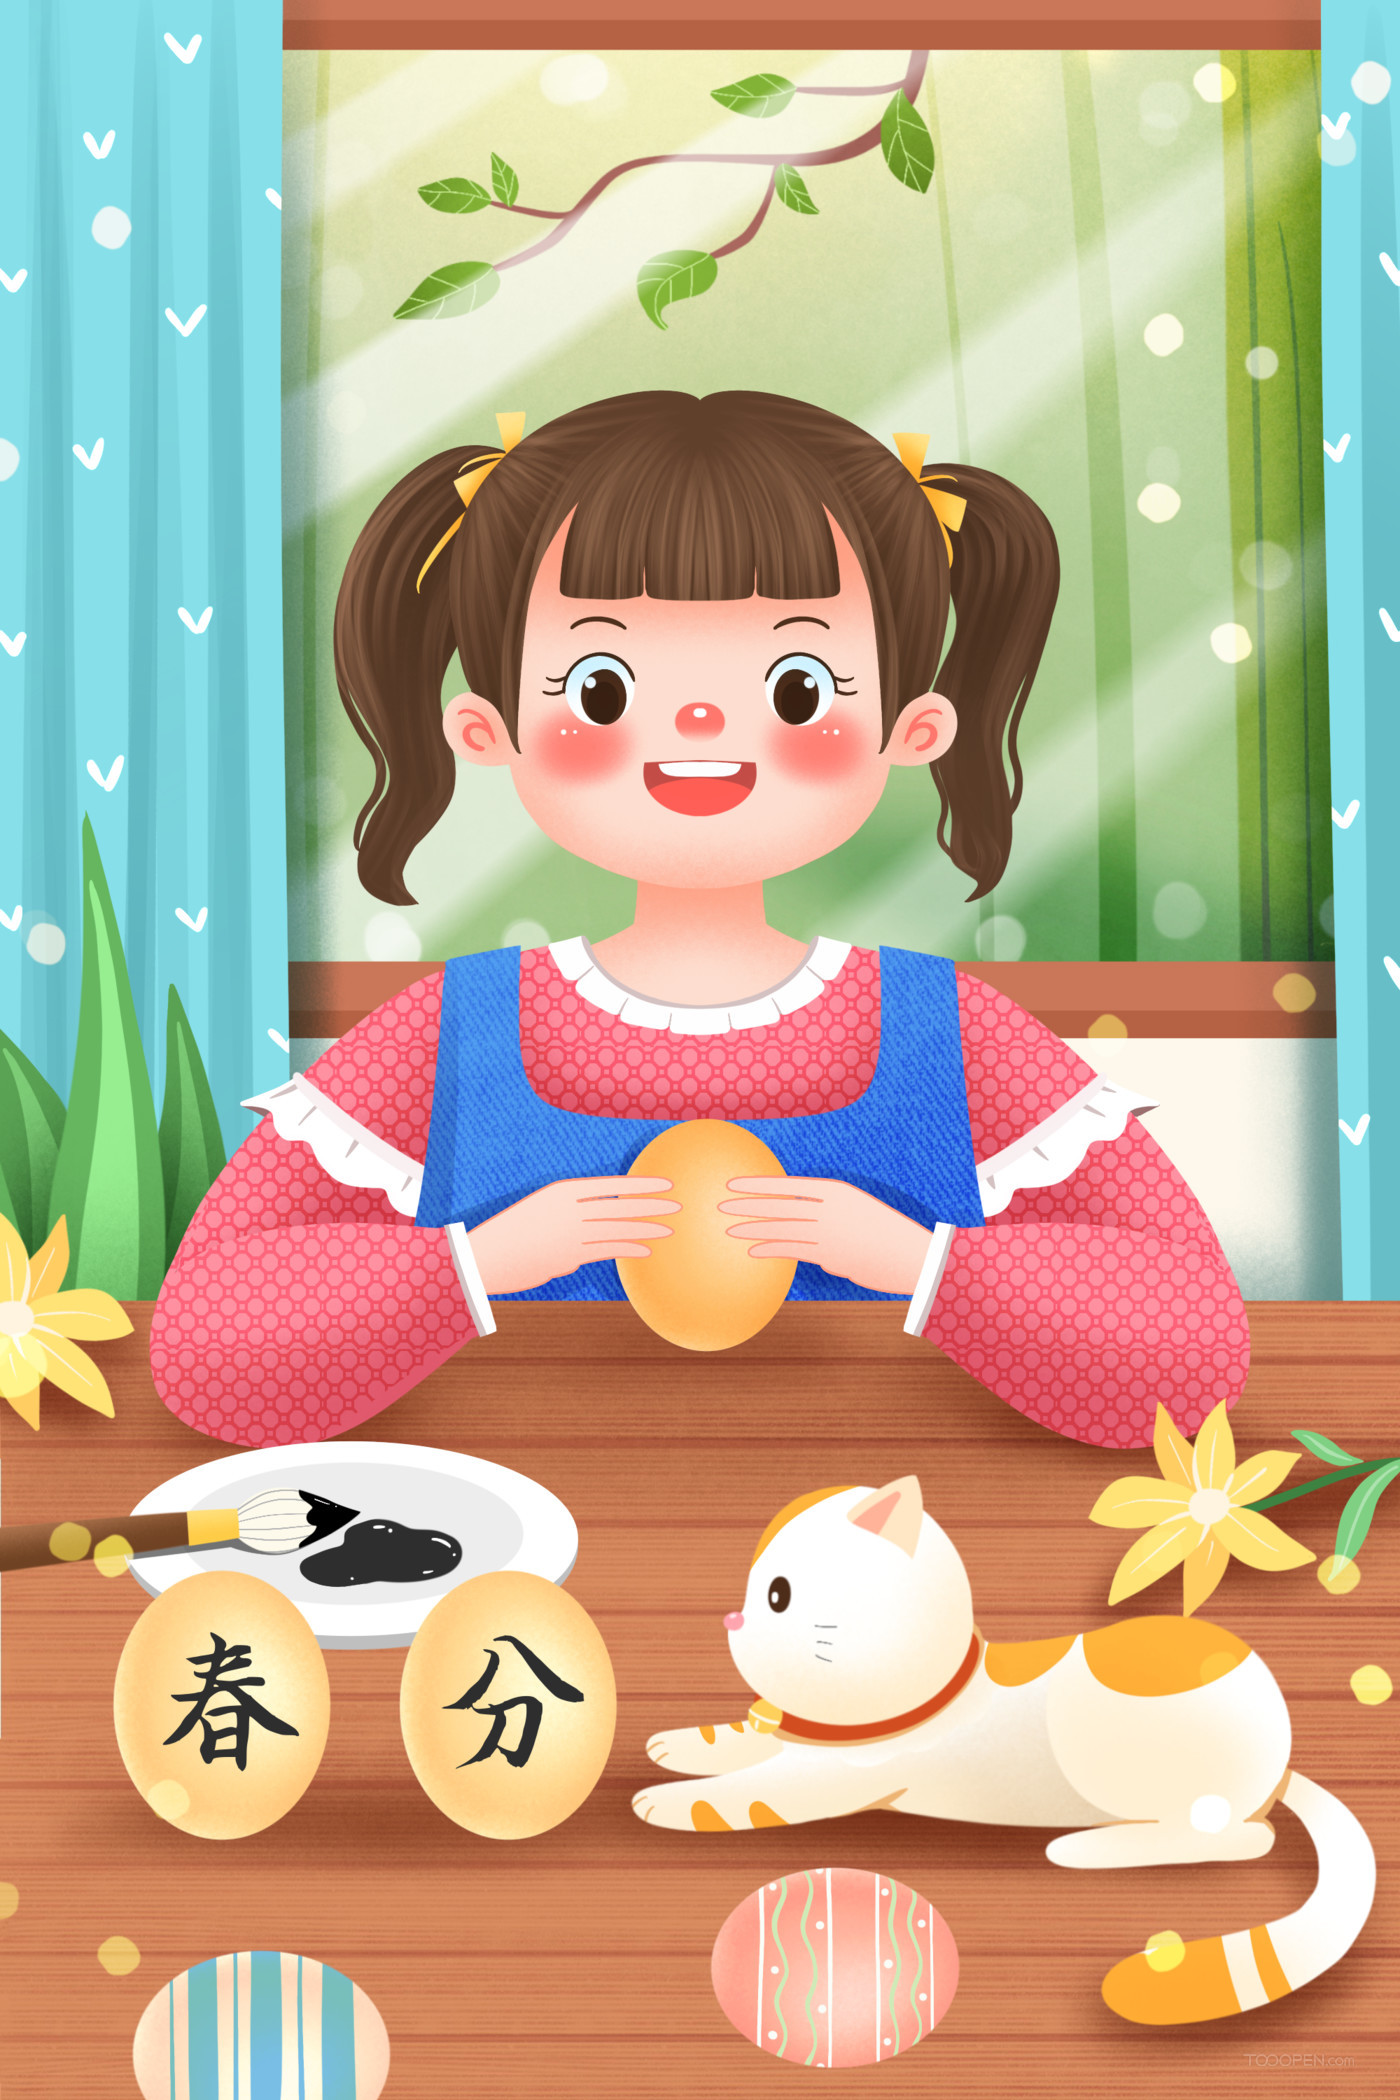 中国传统二十四节气春分节日海报插画素材10款-05